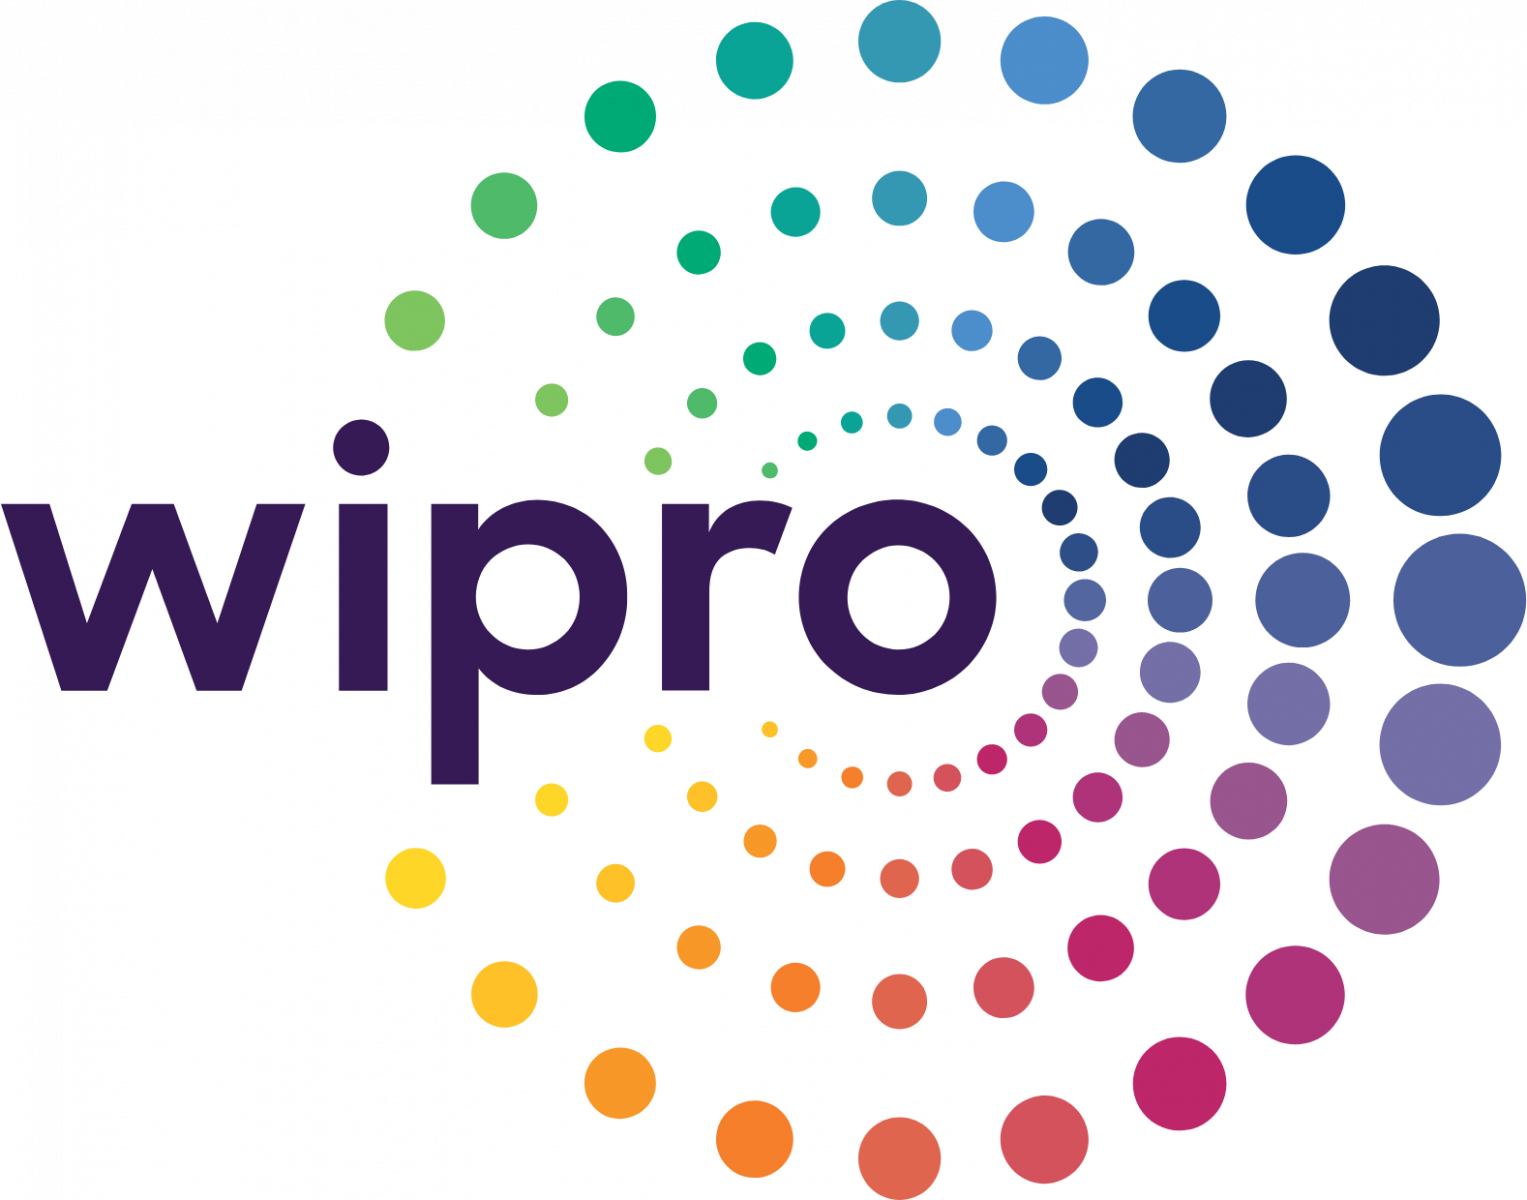 Wipro it companies in Roorkee